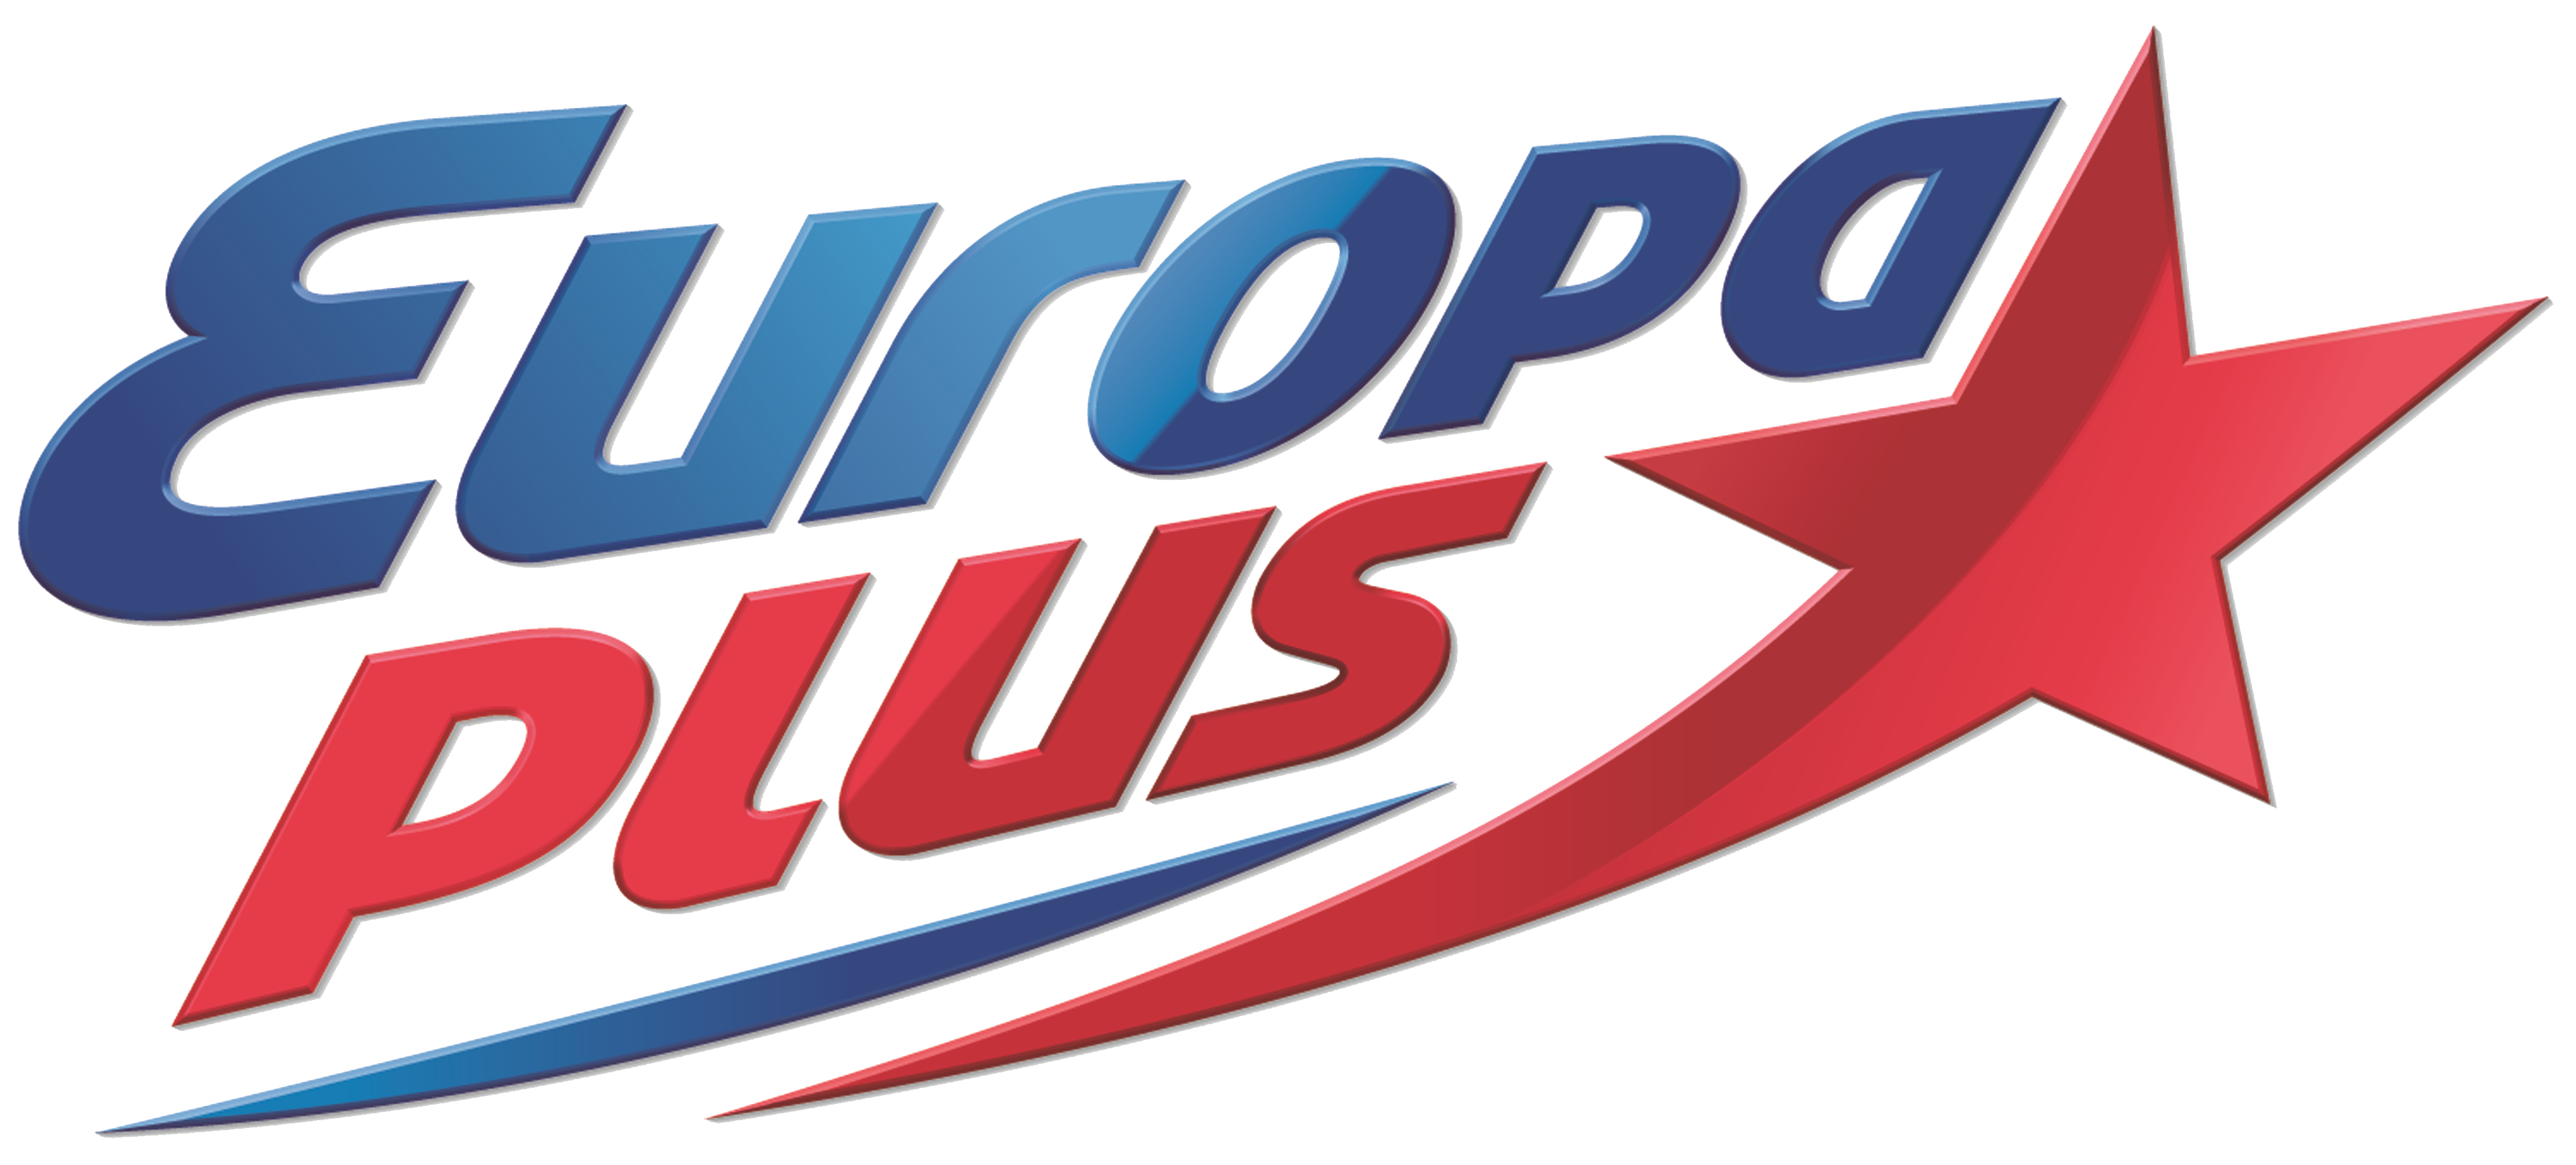 Europa plus